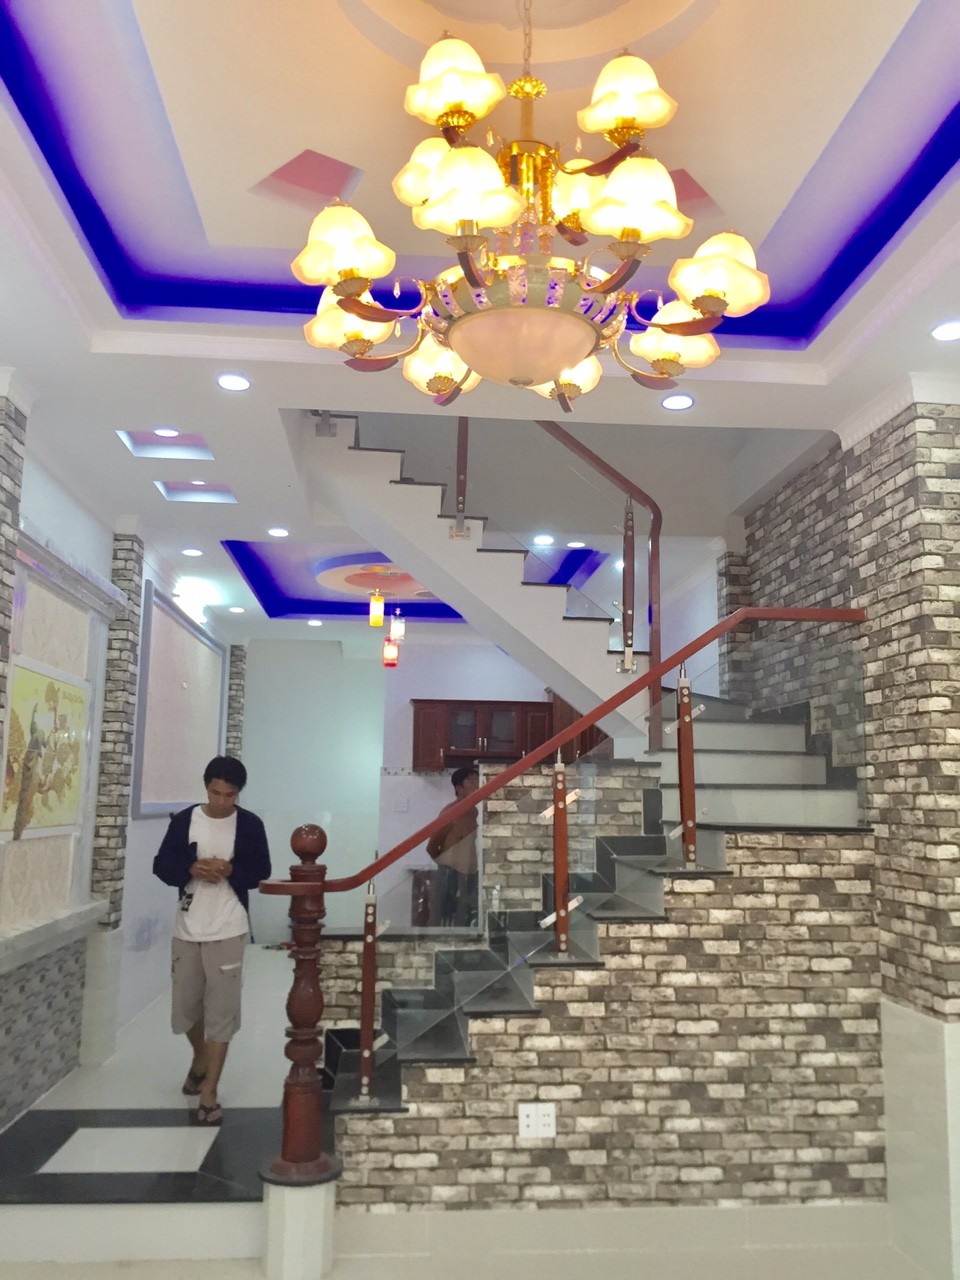 Bán nhà mới đẹp hẻm 71 Đào Tông Nguyên, Nhà Bè, DT 4x18m, 3 lầu. Giá 3,3 tỷ